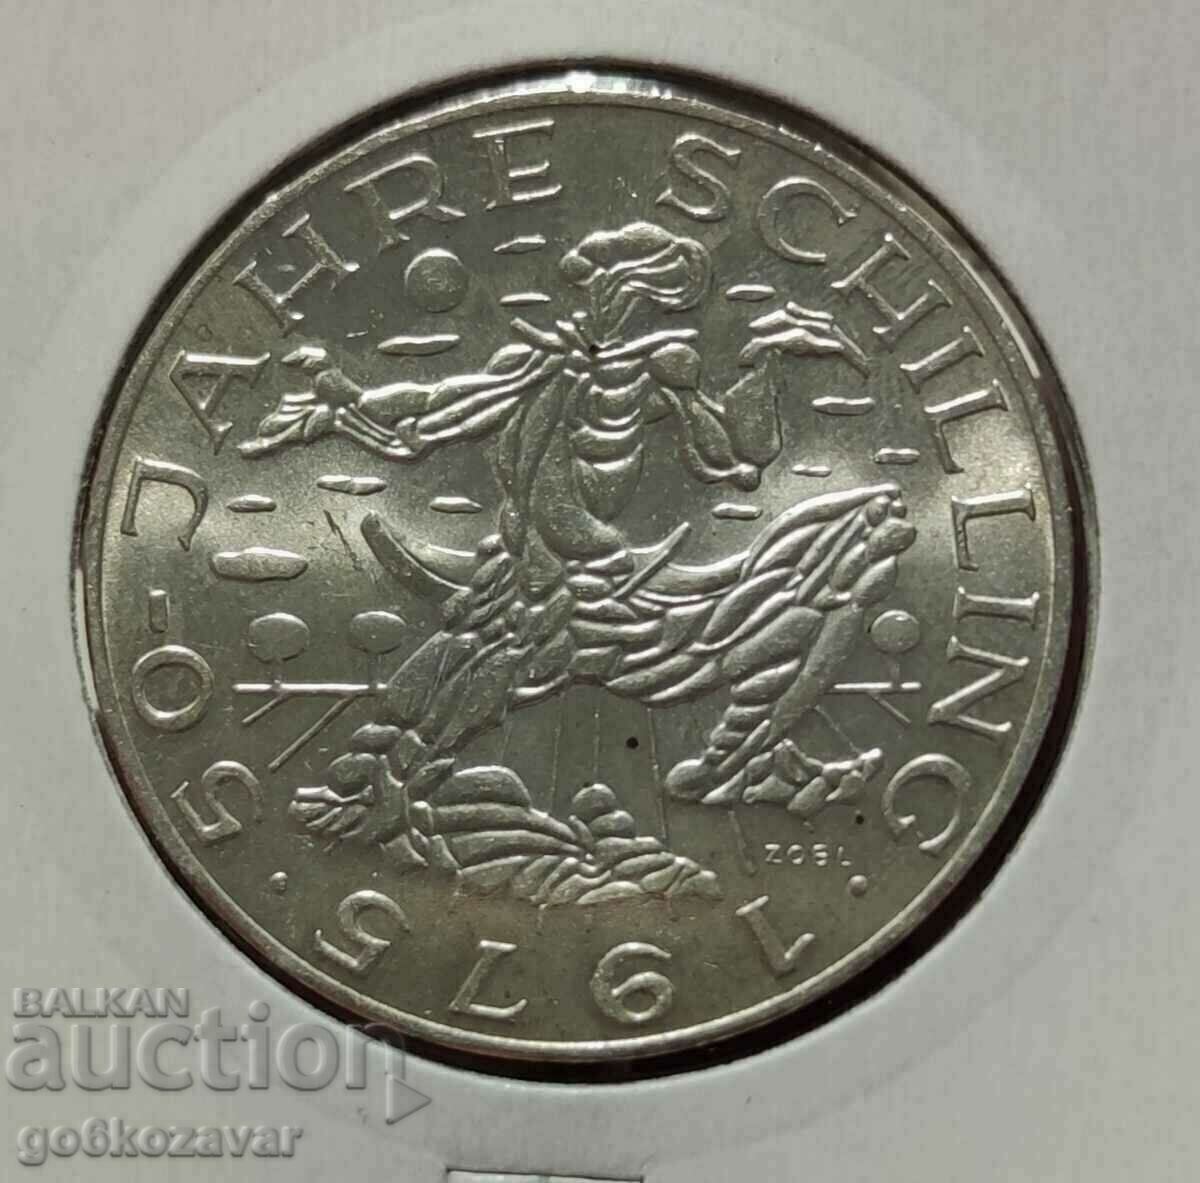 Австрия 100 Шилинга 1975г Сребро ! UNC